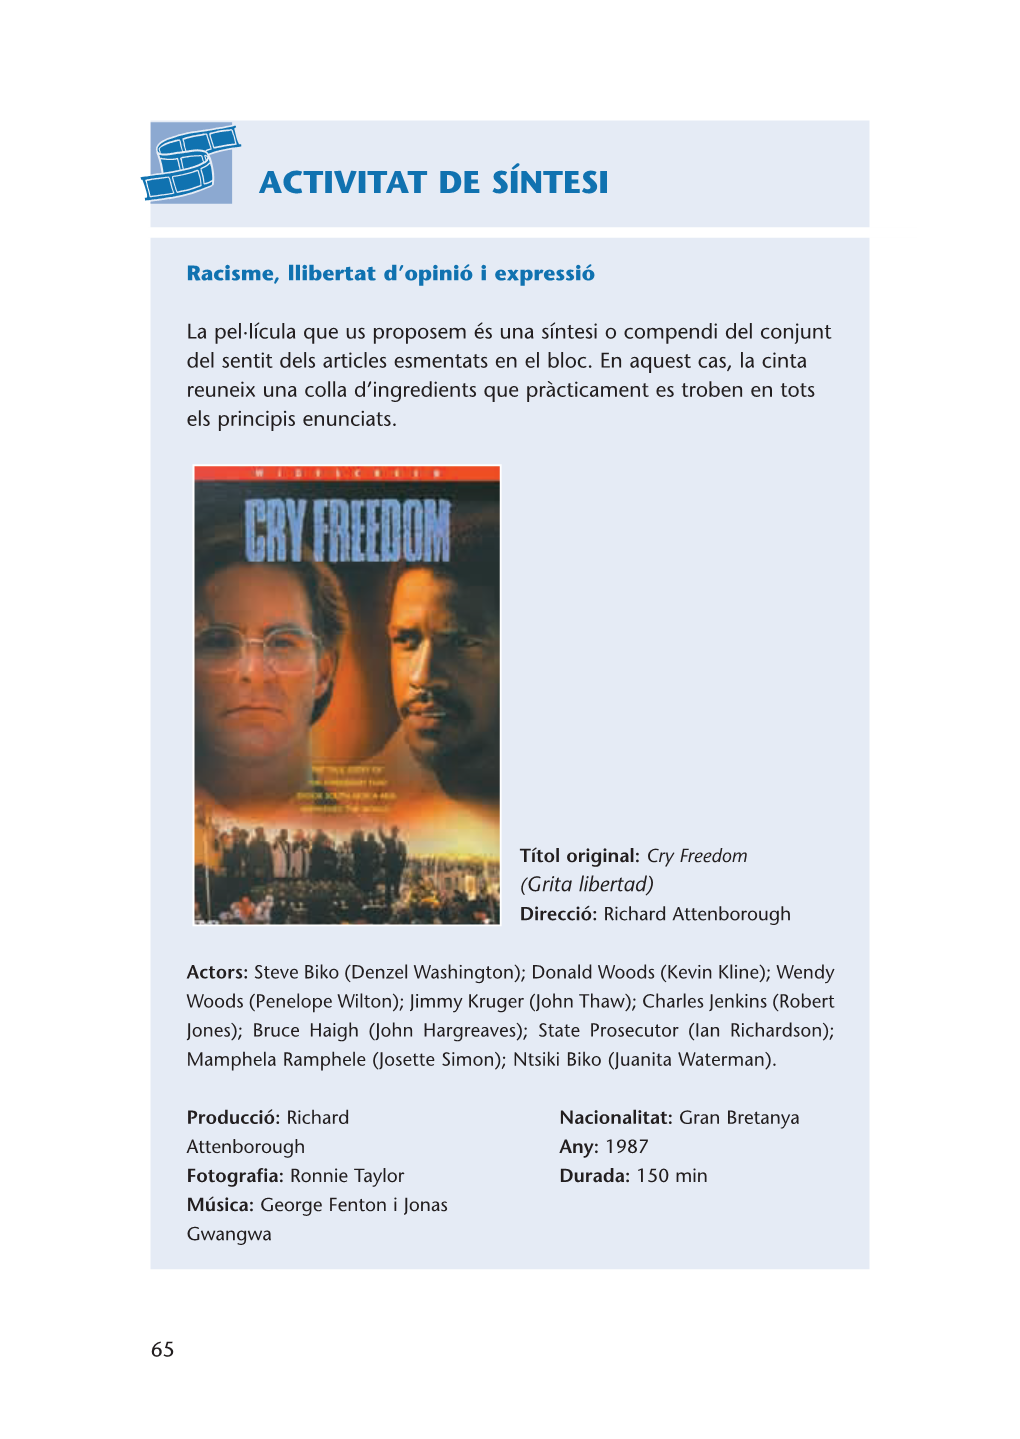 Cry Freedom (Grita Libertad) Direcció: Richard Attenborough